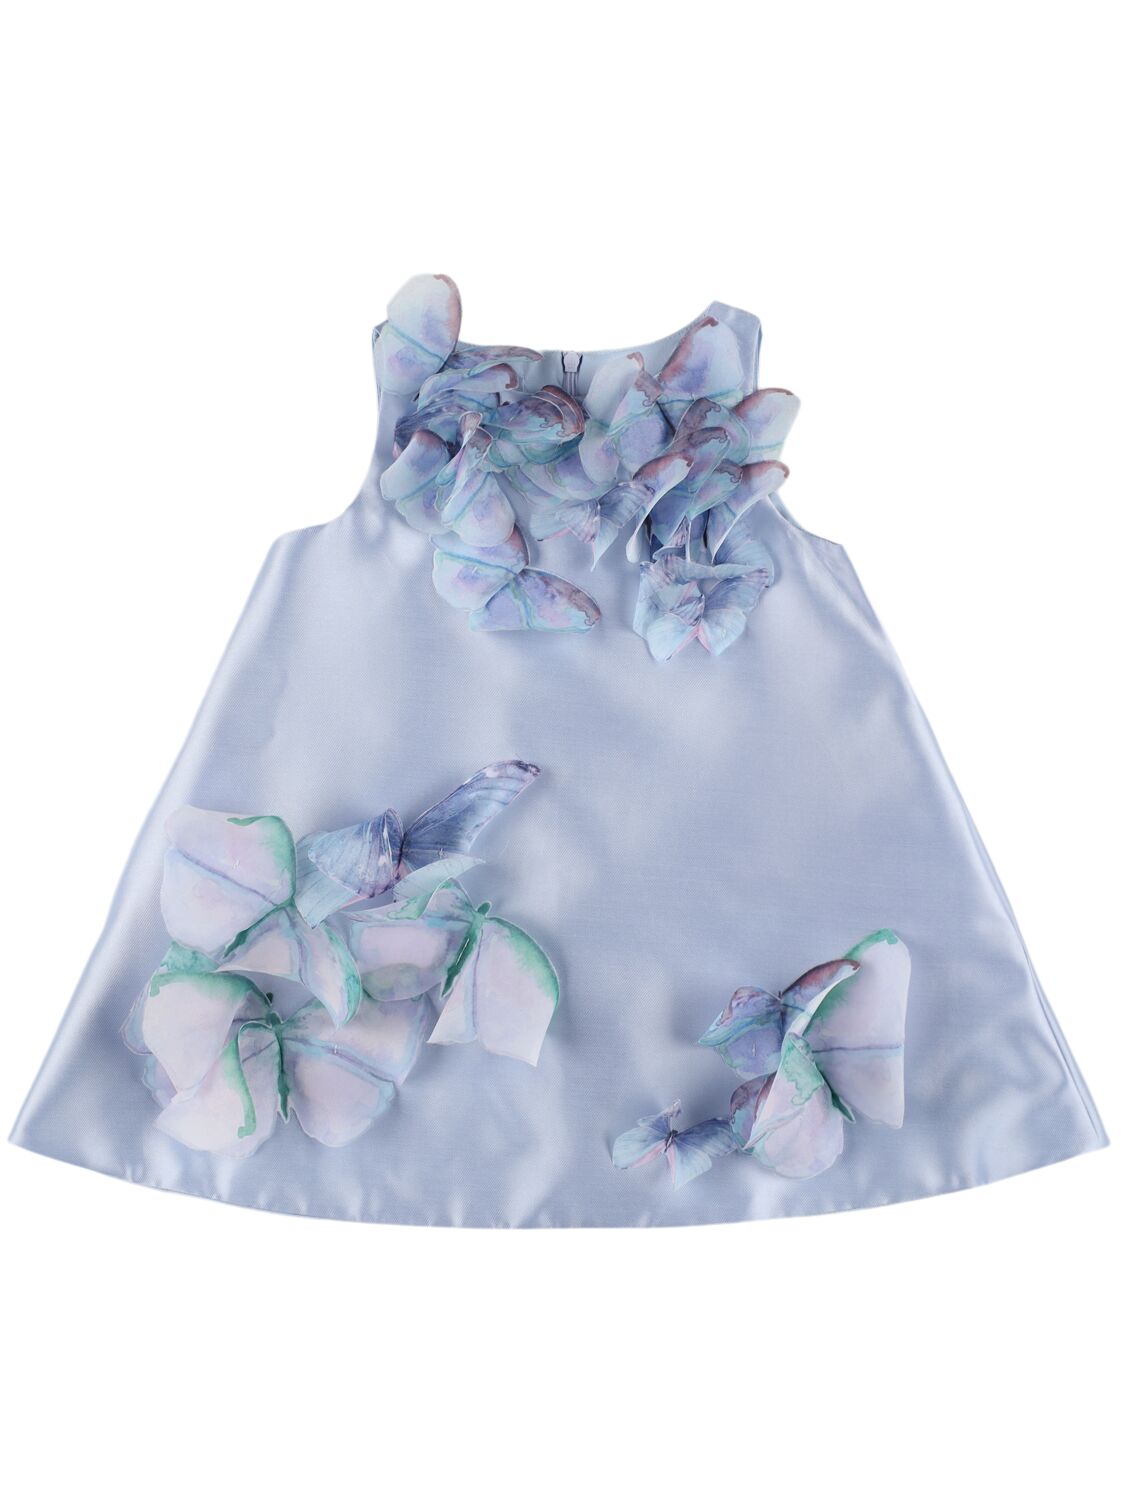 Nikolia Kids' Taffeta Dress W/ Butterfly Appliqués In Light Blue